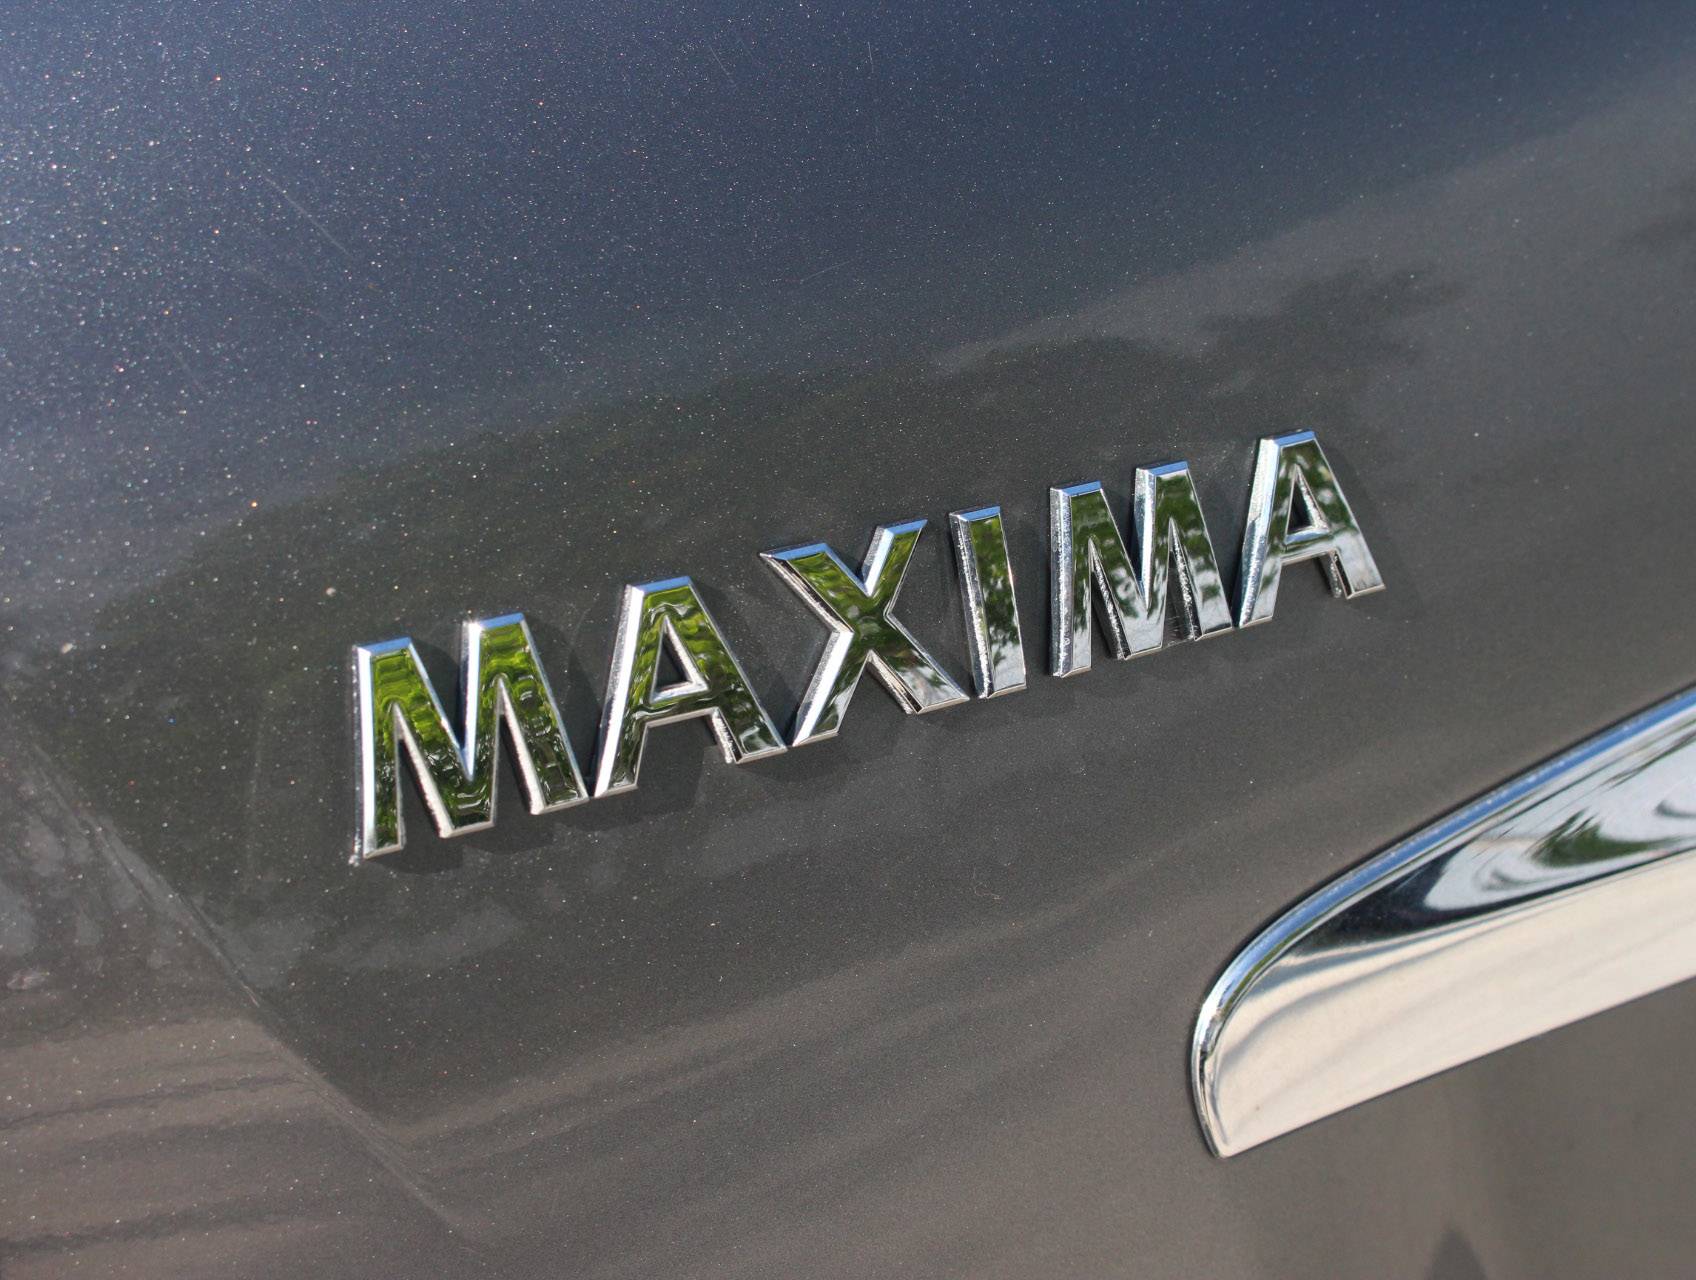 Florida Fine Cars - Used NISSAN Maxima 2014 MIAMI 3.5 S